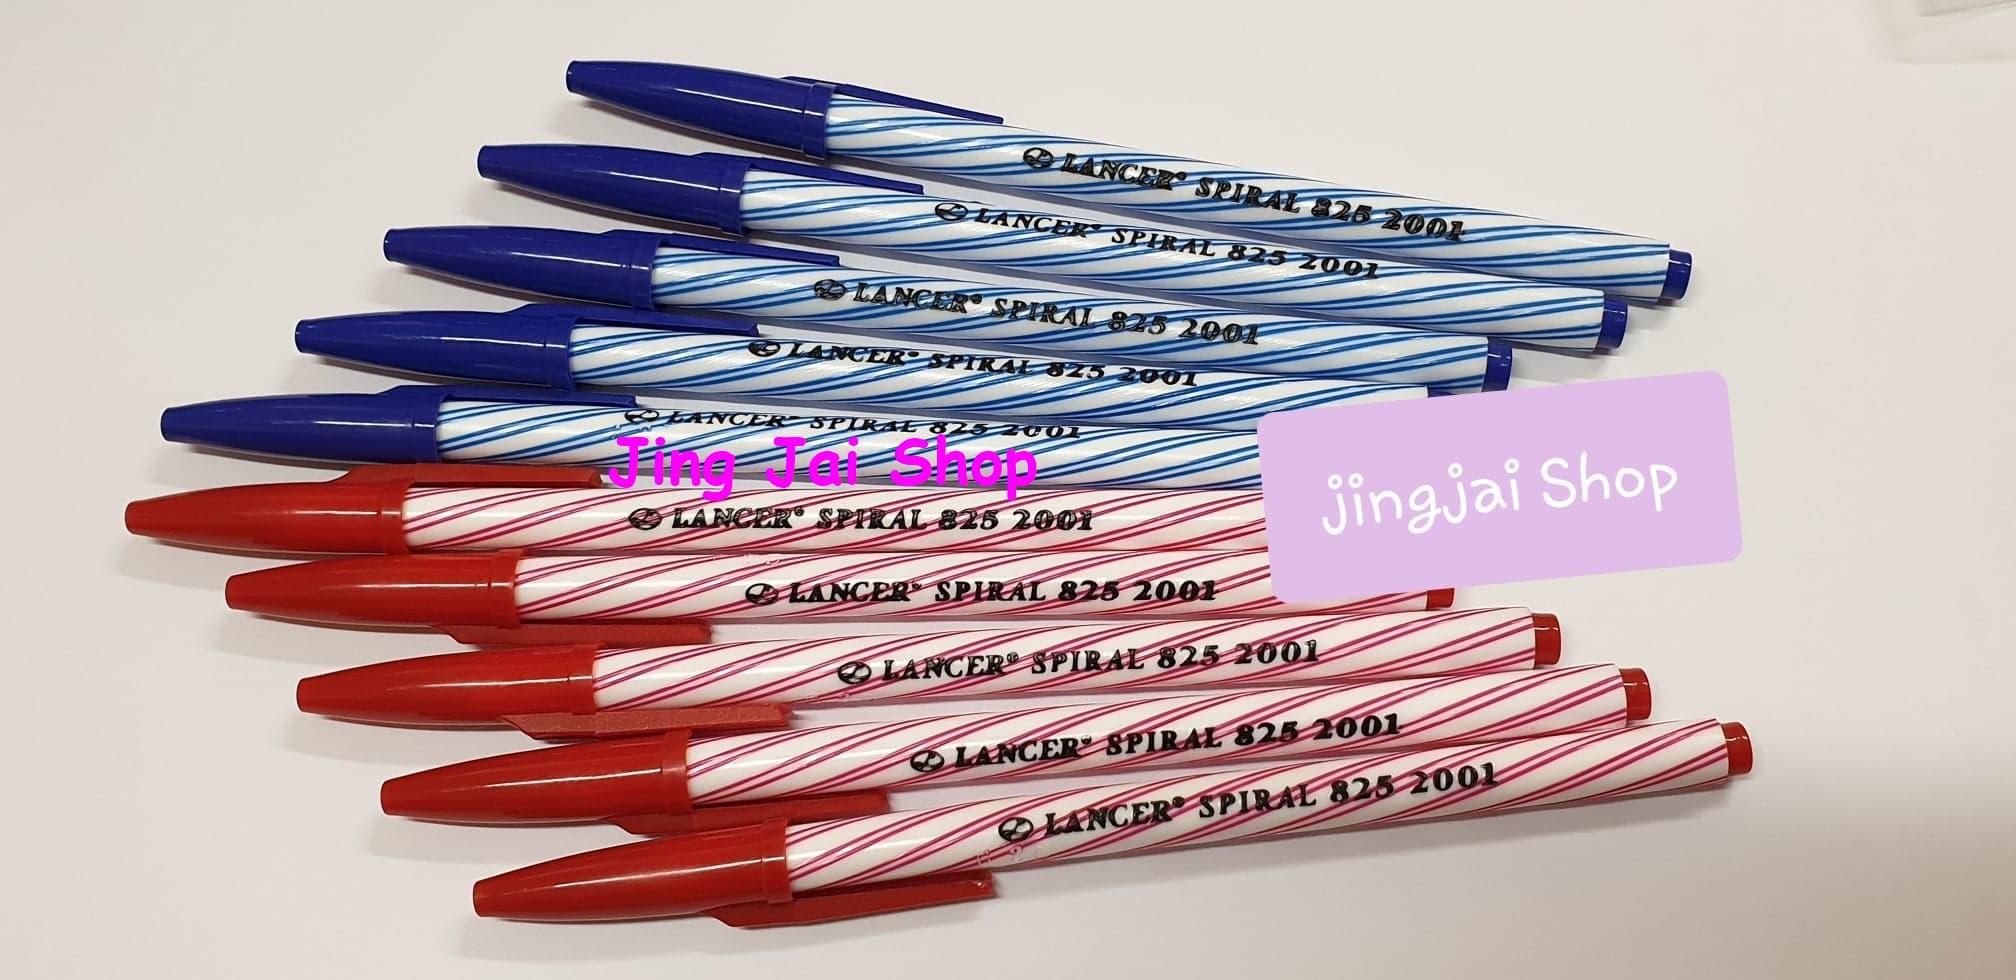 ปากกา Lancer ปากกาลูกลื่น 0.5 มม. ปากกาแลนเซอร์ รุ่นSpiral 825 ปากกาน้ำเงิน +สีแดง หมึกสีน้ำเงิน หมึกสีแดง จำนวน 5+5 =10 ด้าม เขียนนาน เขียนดี